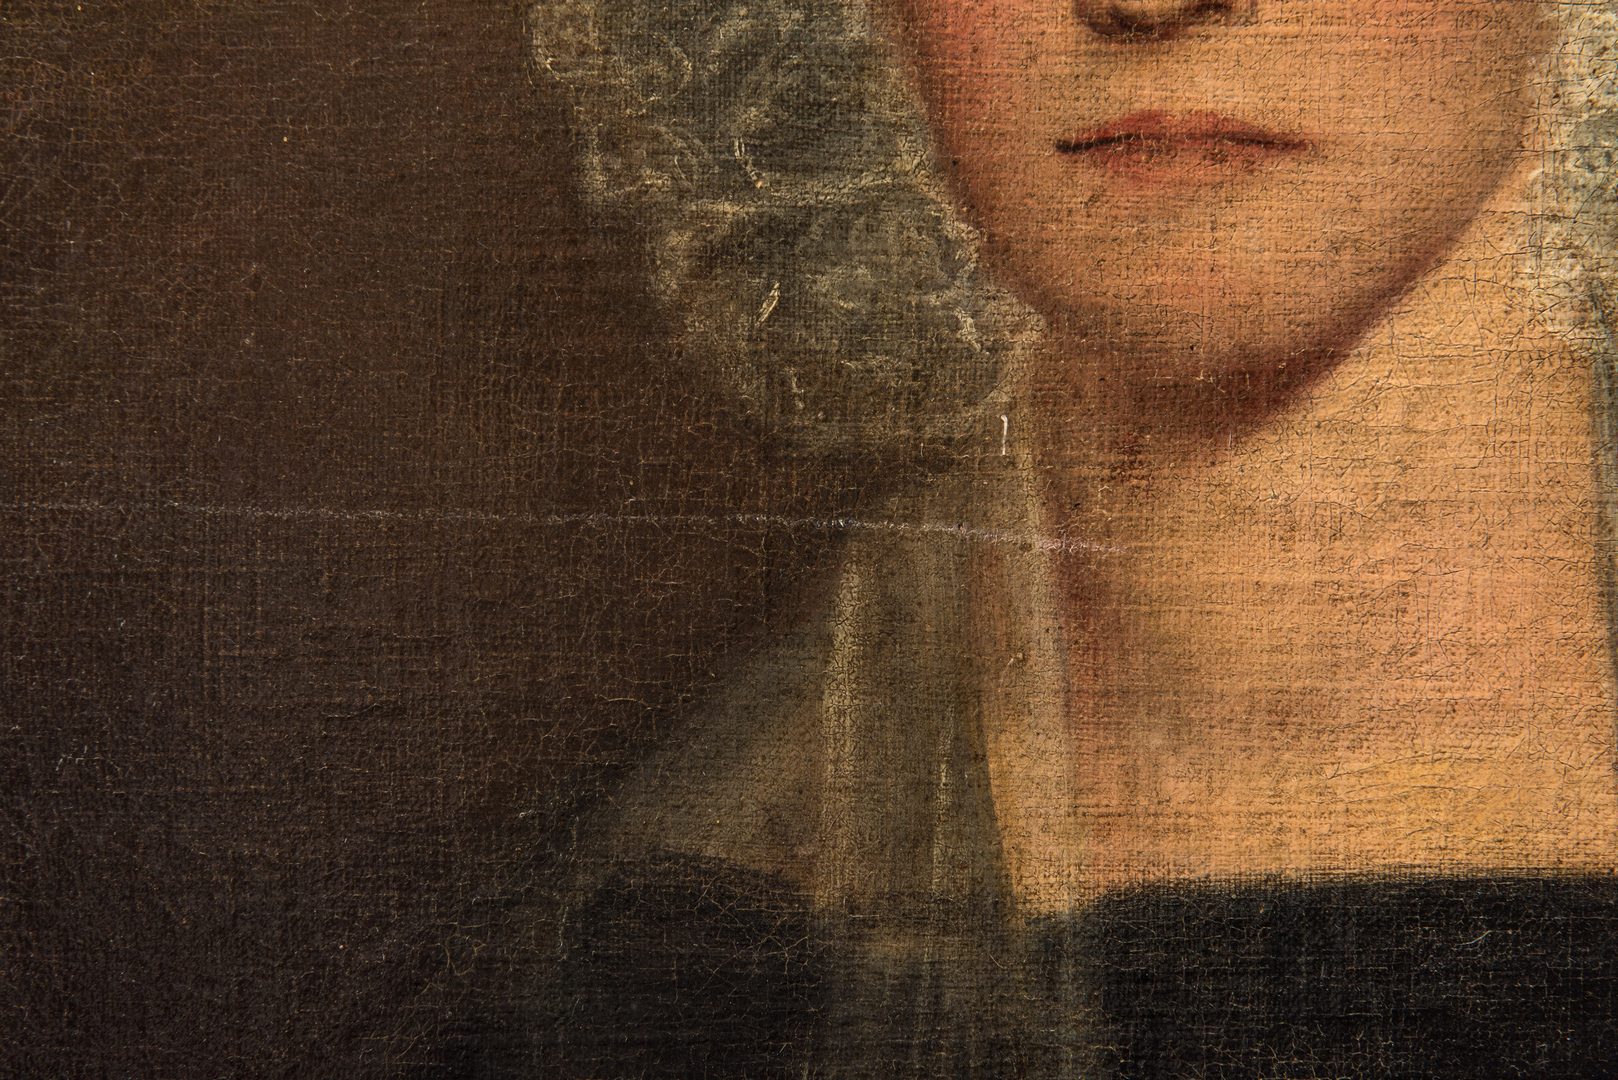 Lot 102: 19th C. Portrait of a Woman, "Gillespie"